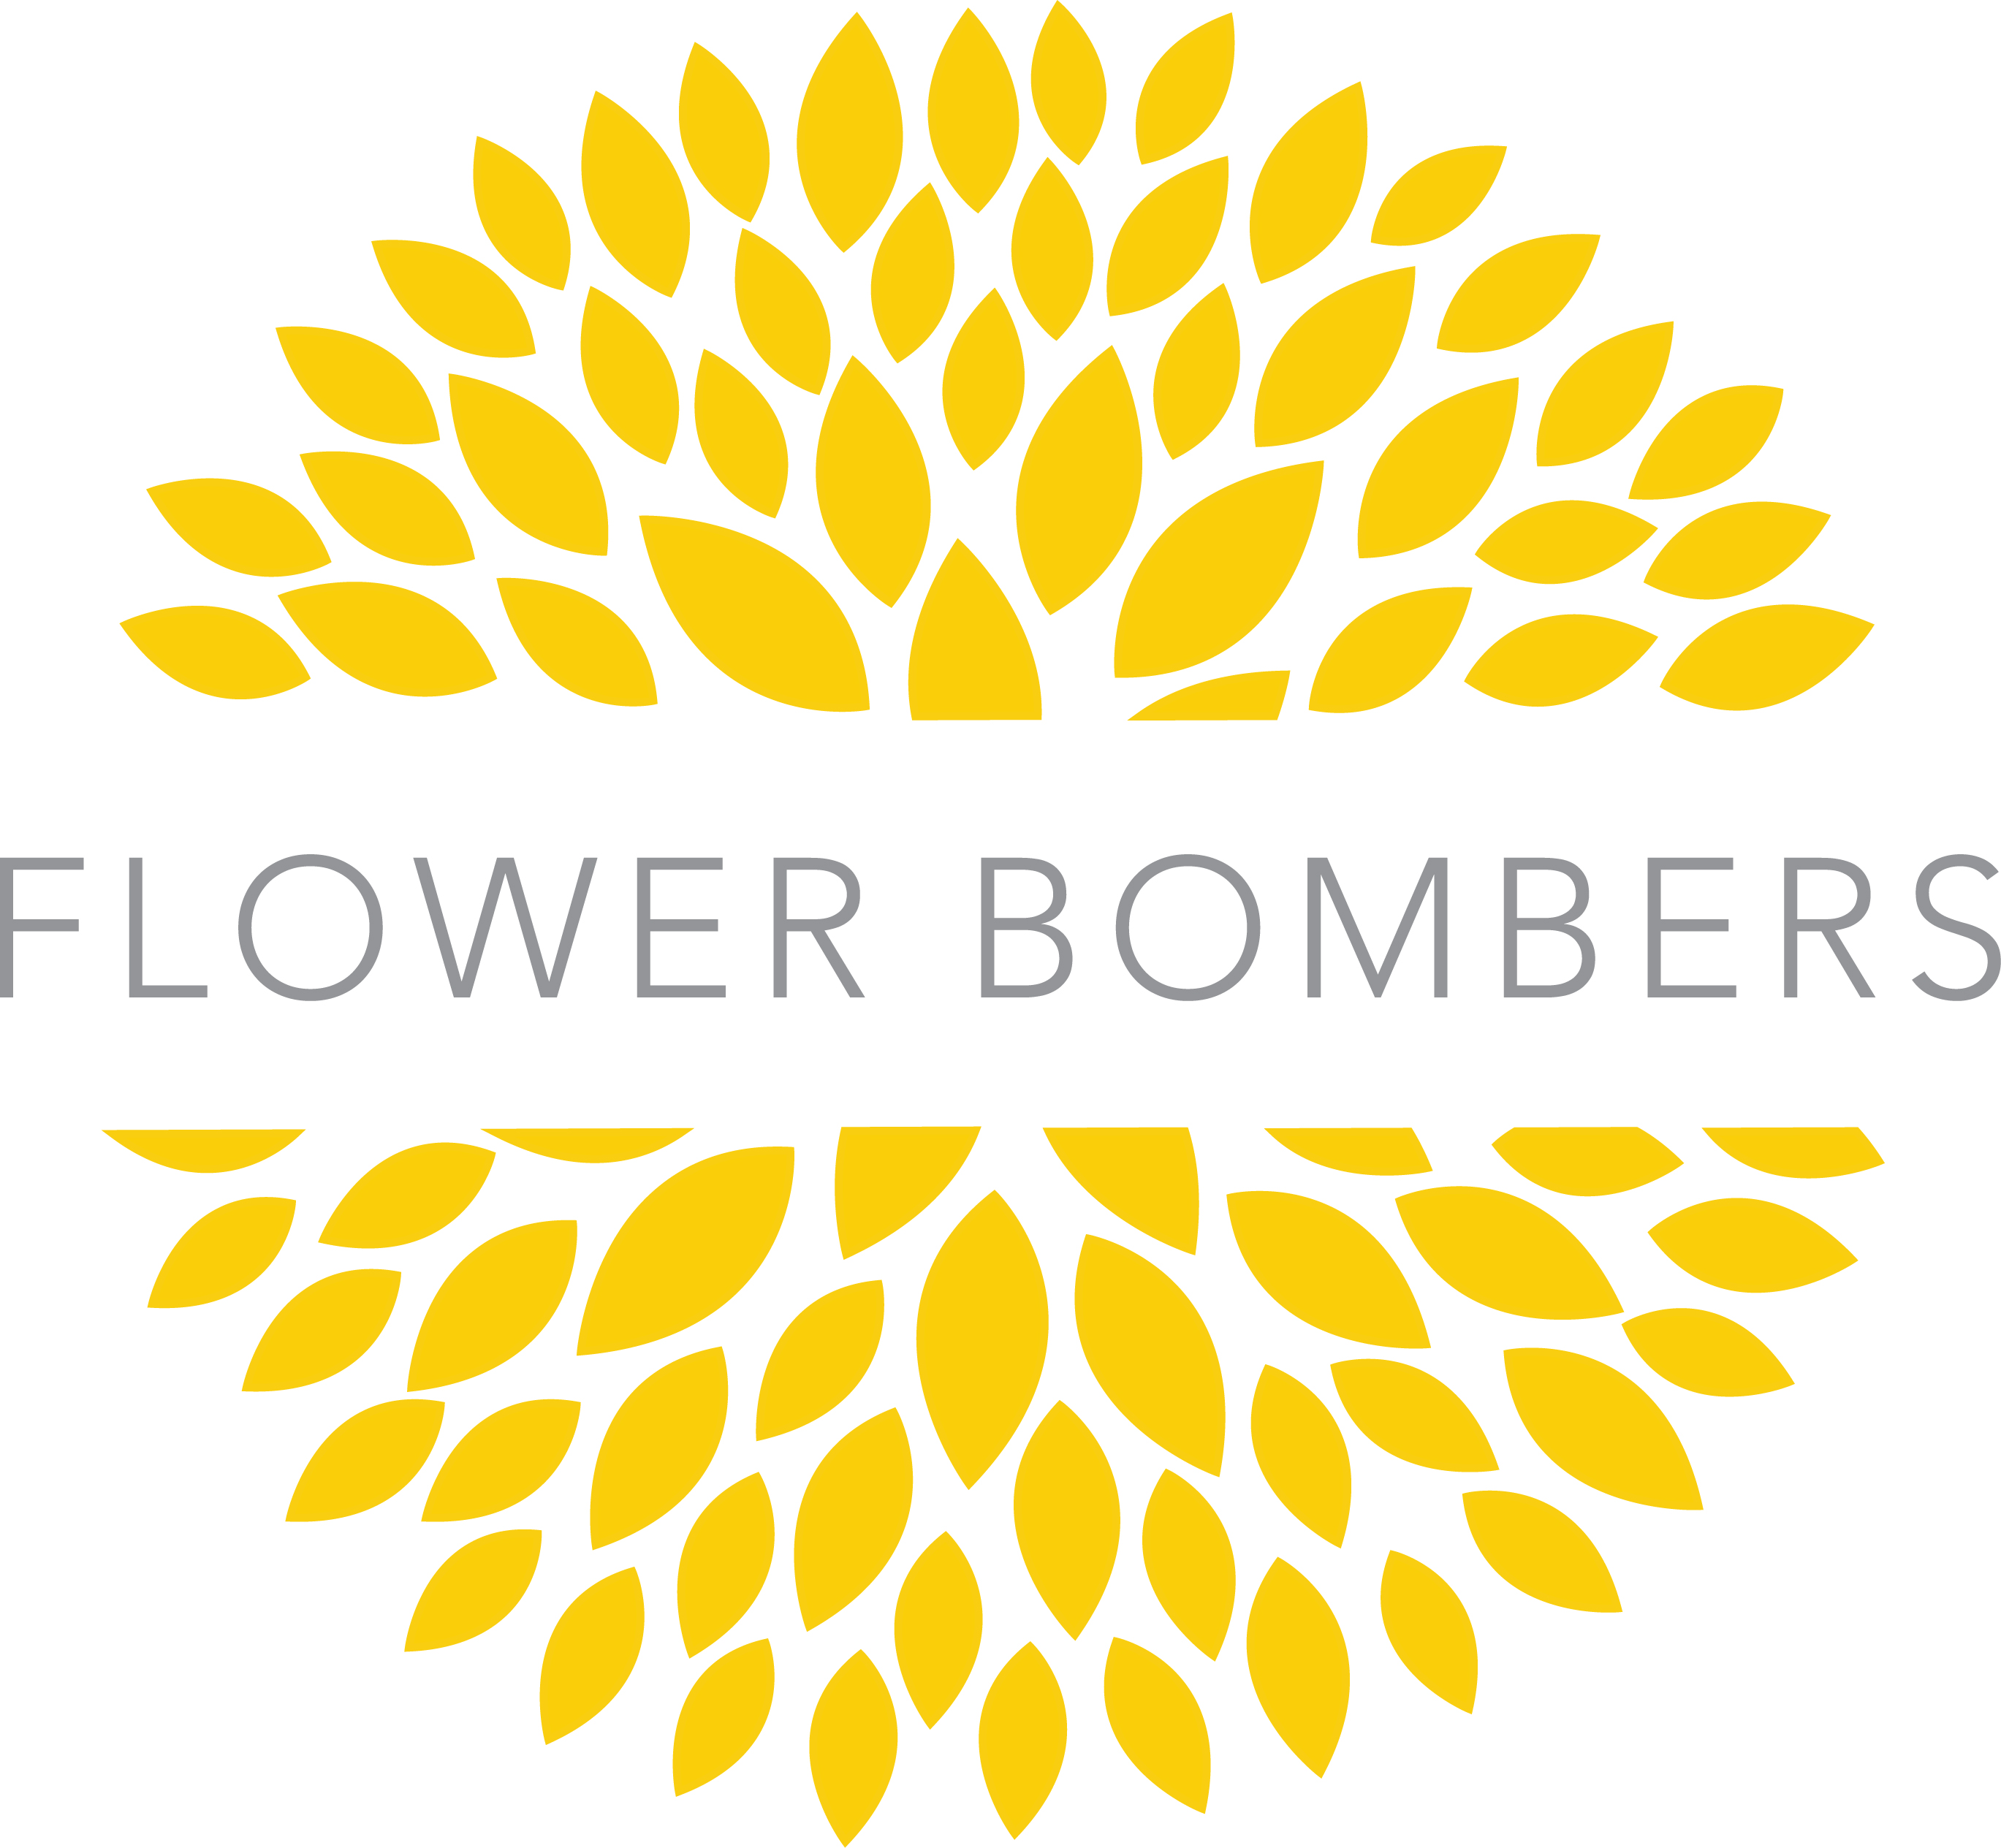 Flower Bombers